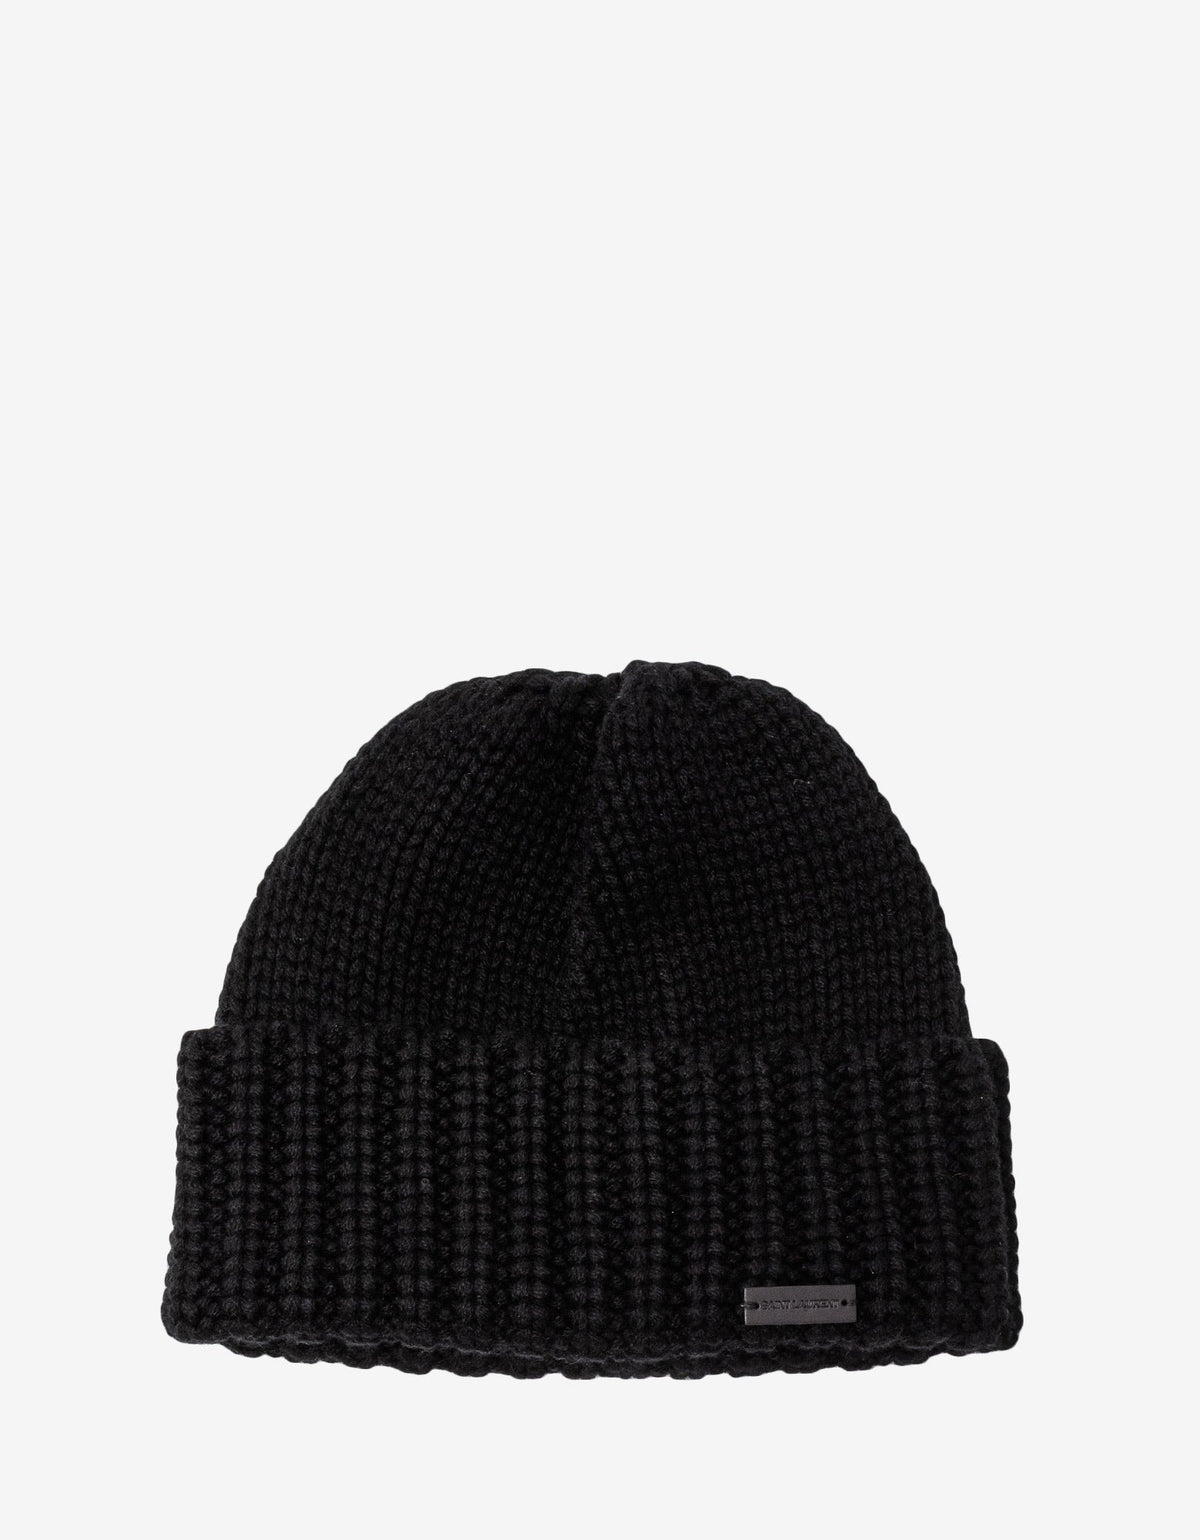 Saint Laurent Black Cashmere Beanie Hat